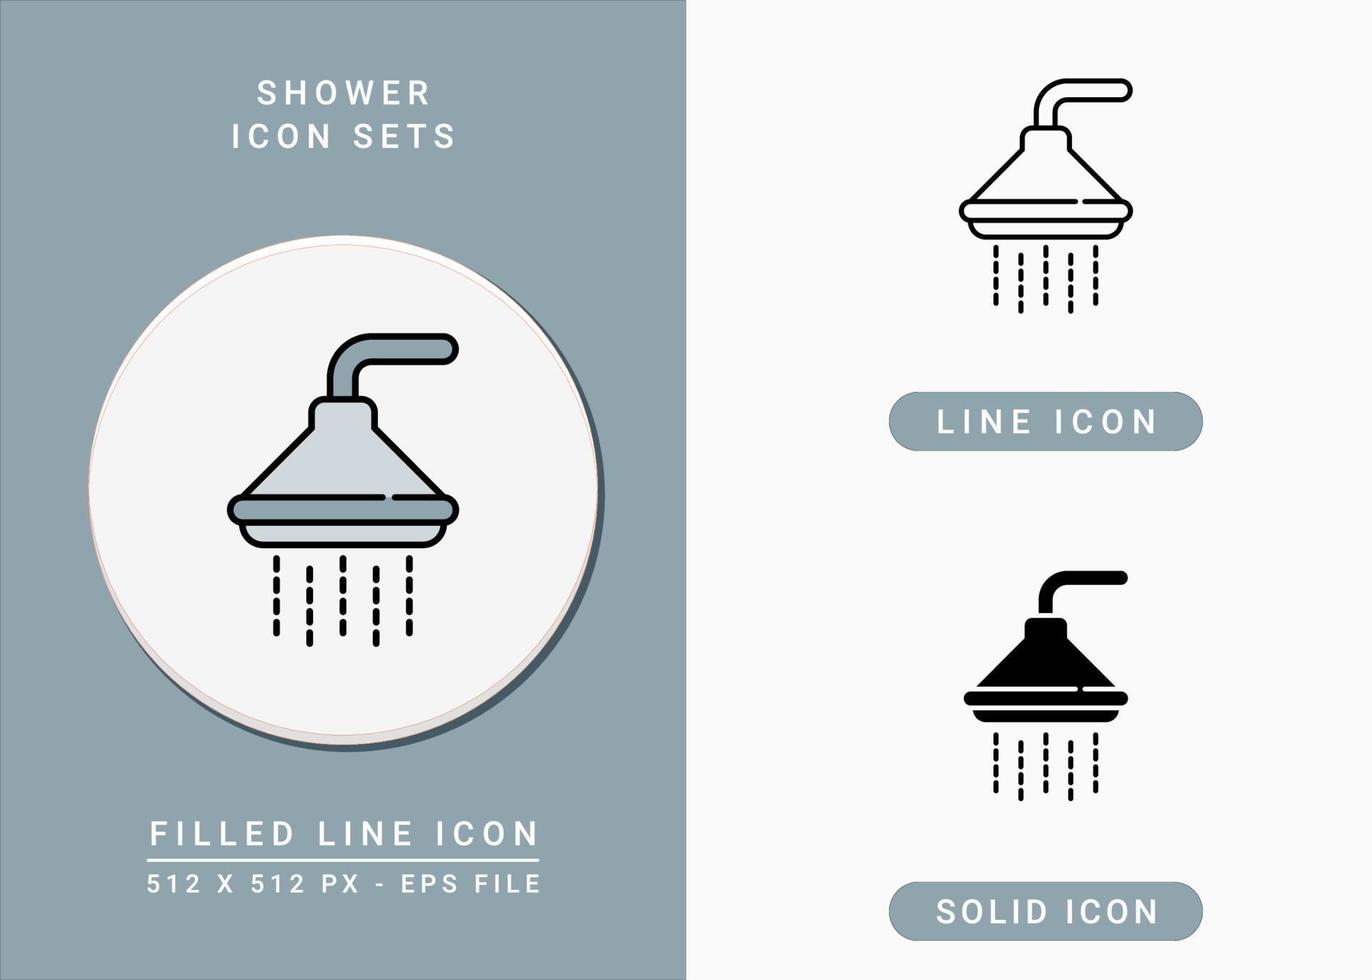 le icone della doccia impostano l'illustrazione vettoriale con lo stile della linea dell'icona. concetto di bagno con doccia sprinkler. icona del tratto modificabile su sfondo bianco isolato per il web design, l'interfaccia utente e l'applicazione mobile